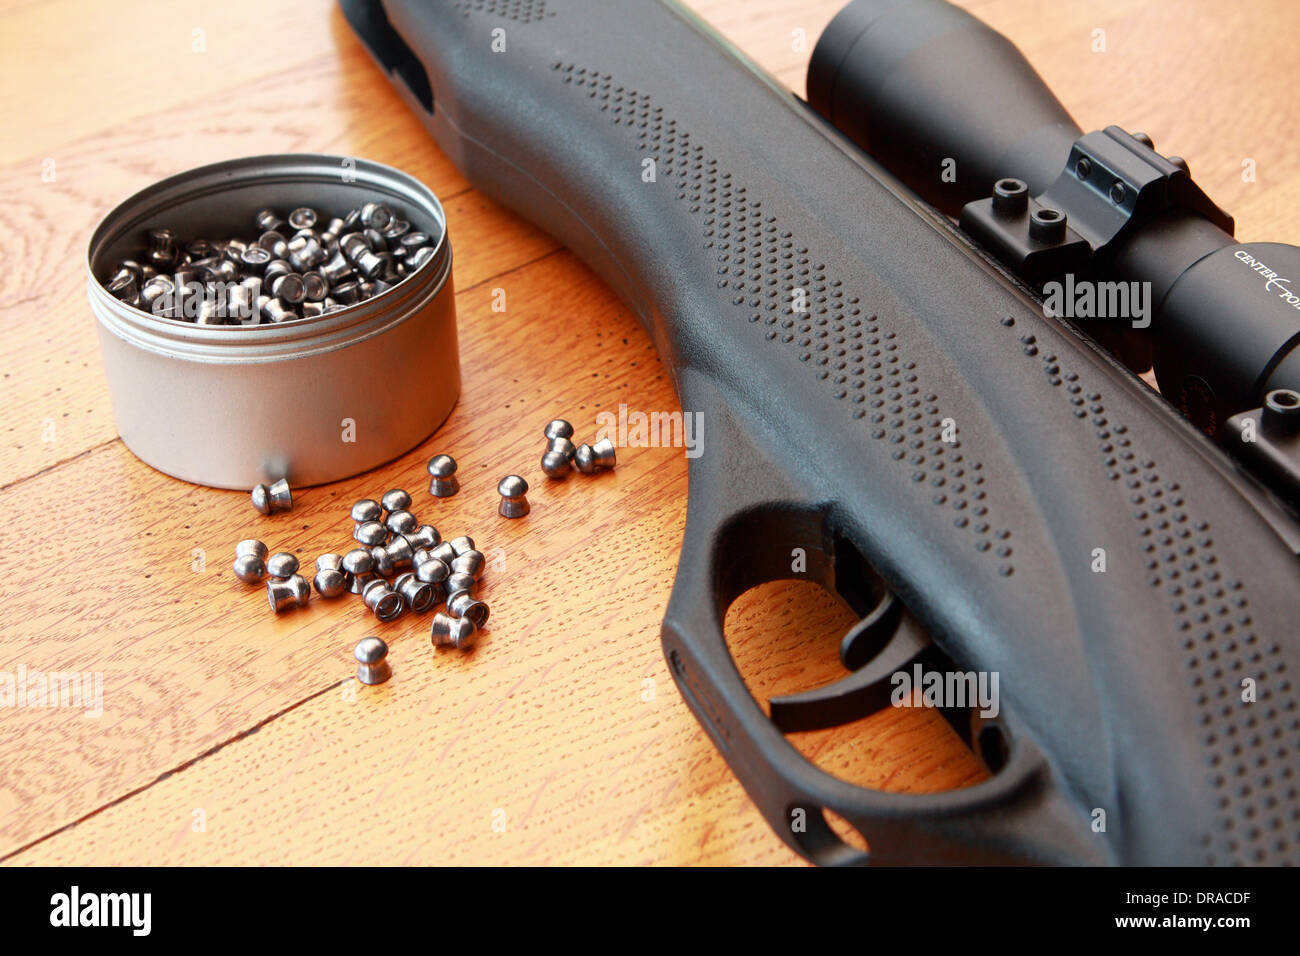 Rifle de aire comprimido pellets calibre .177 – Do it Center